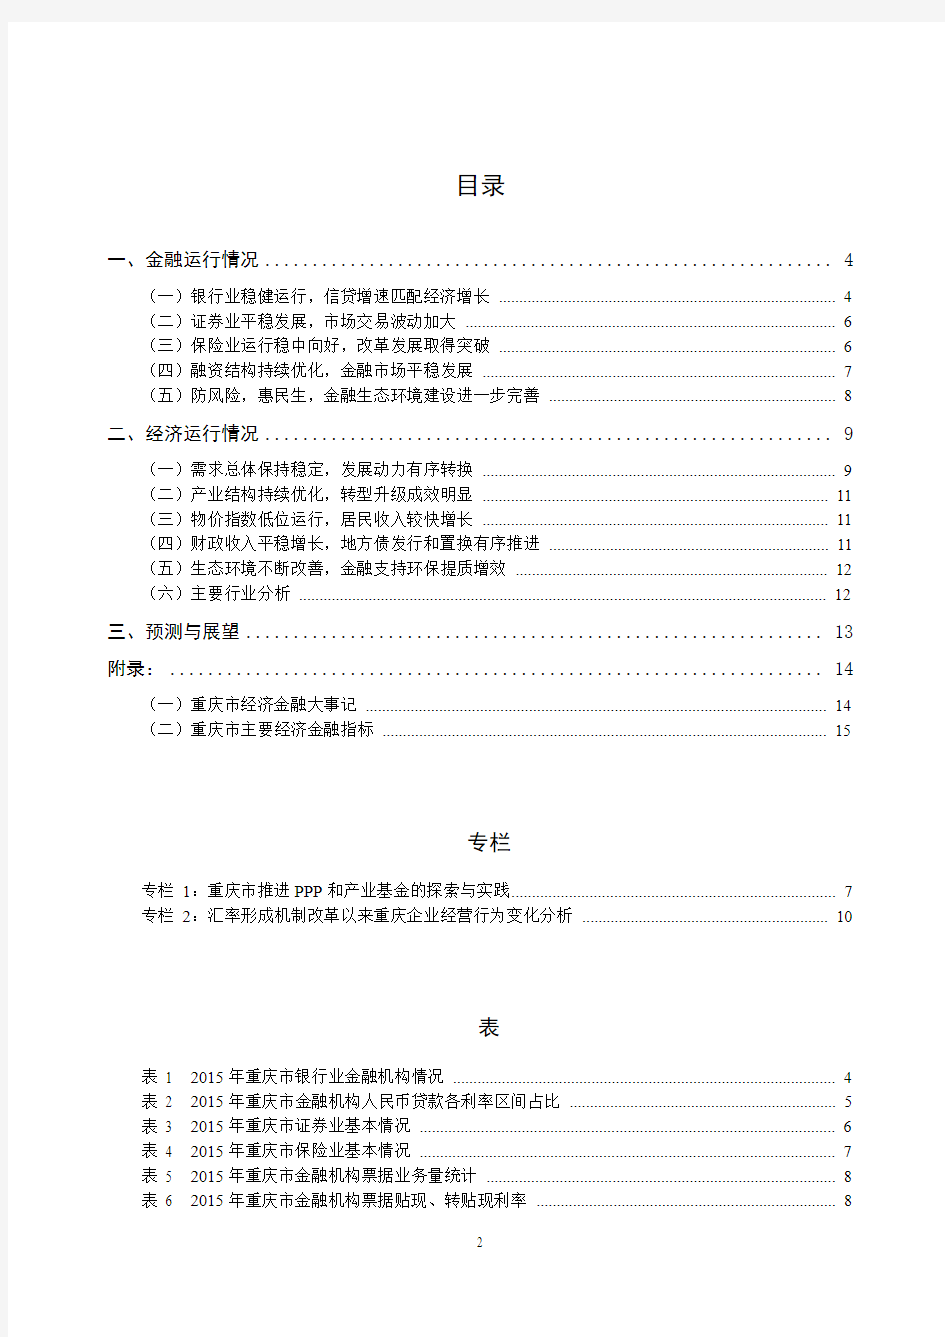 2015年重庆市金融运行报告